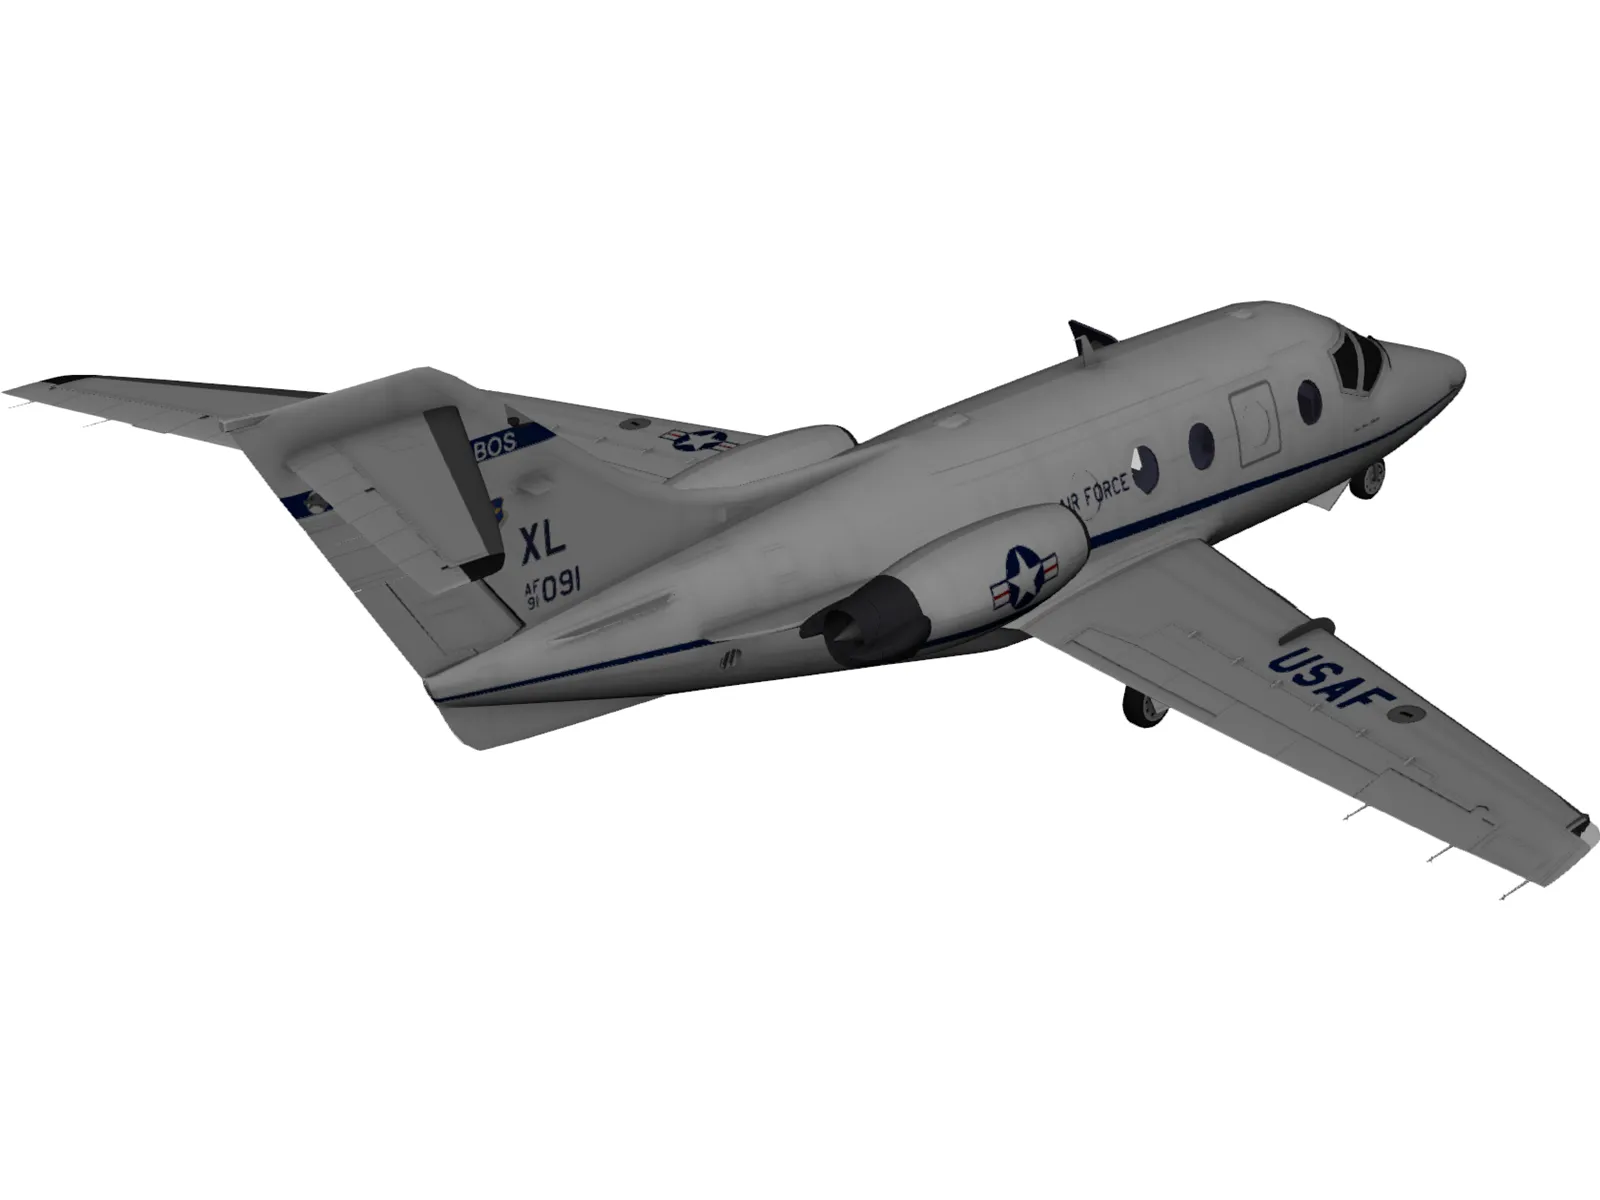 T-1 Jayhawk 3D Model